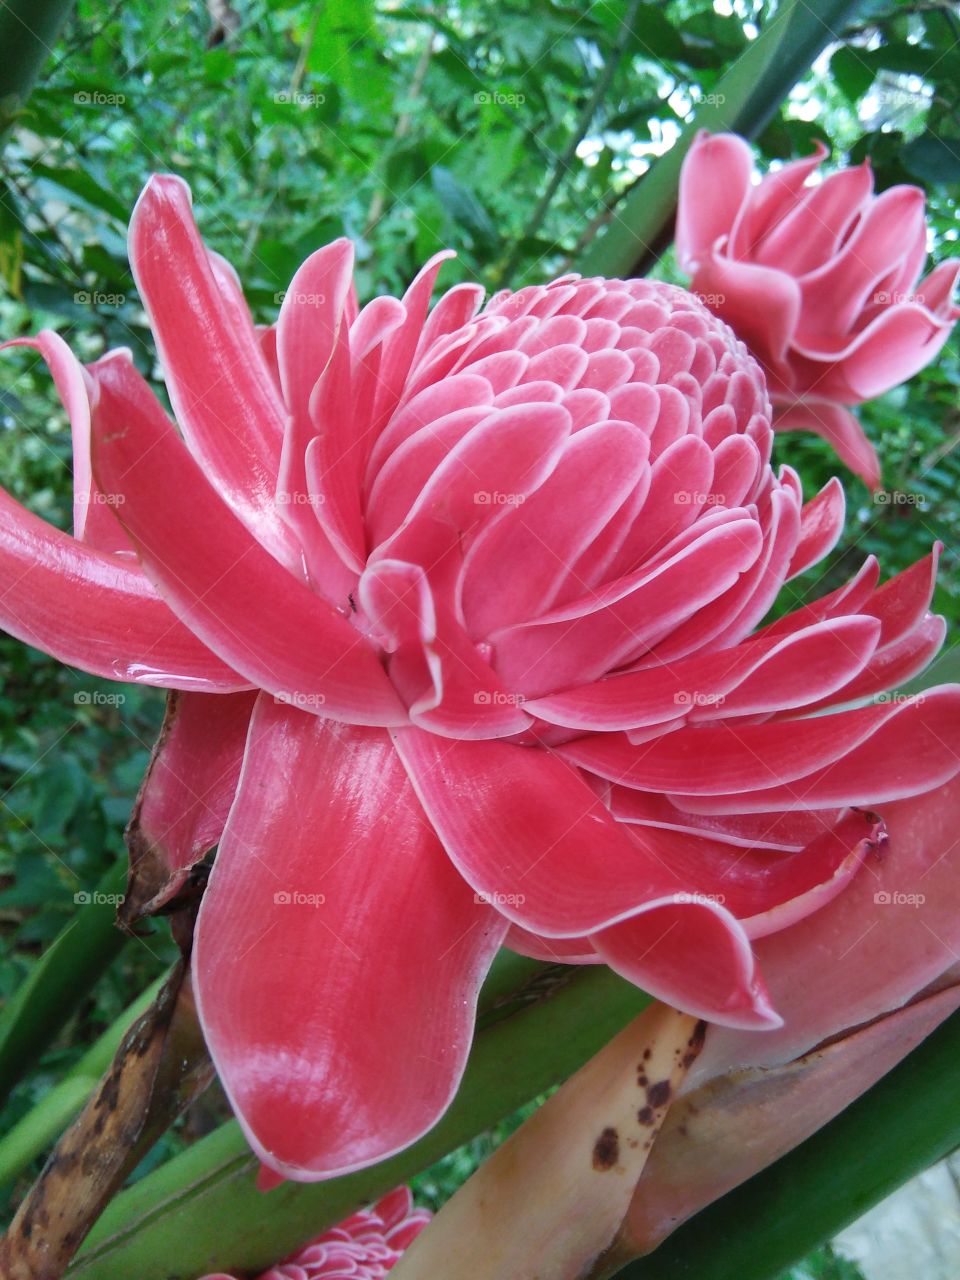 sri lankan beautiful flower of "siddhartha"